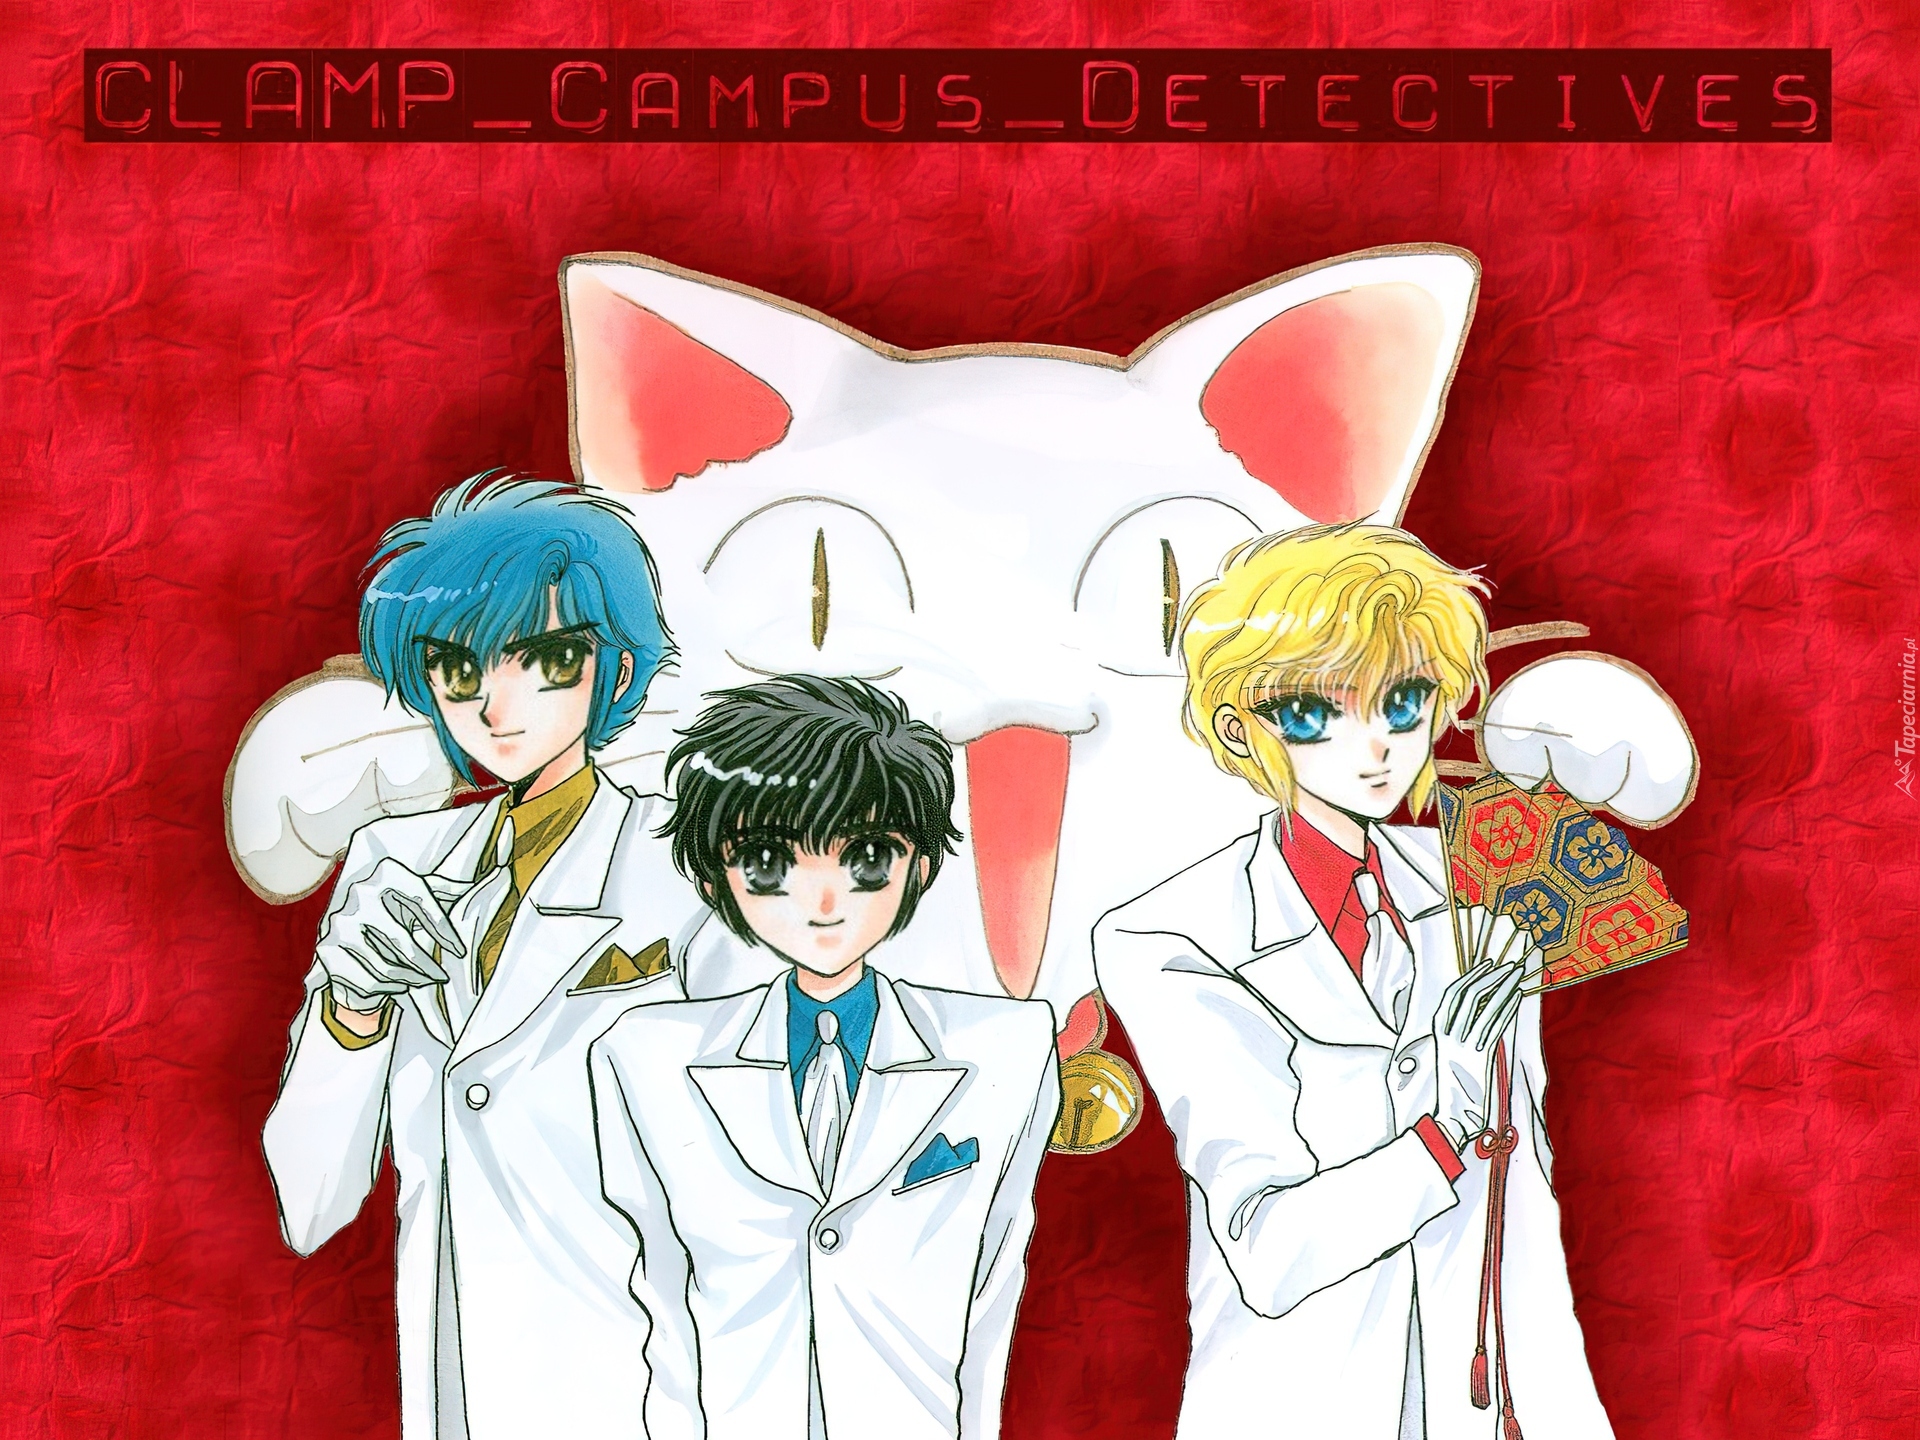 Claamp Campus Detectives, garnitury, kot, ludzie, wachlarz